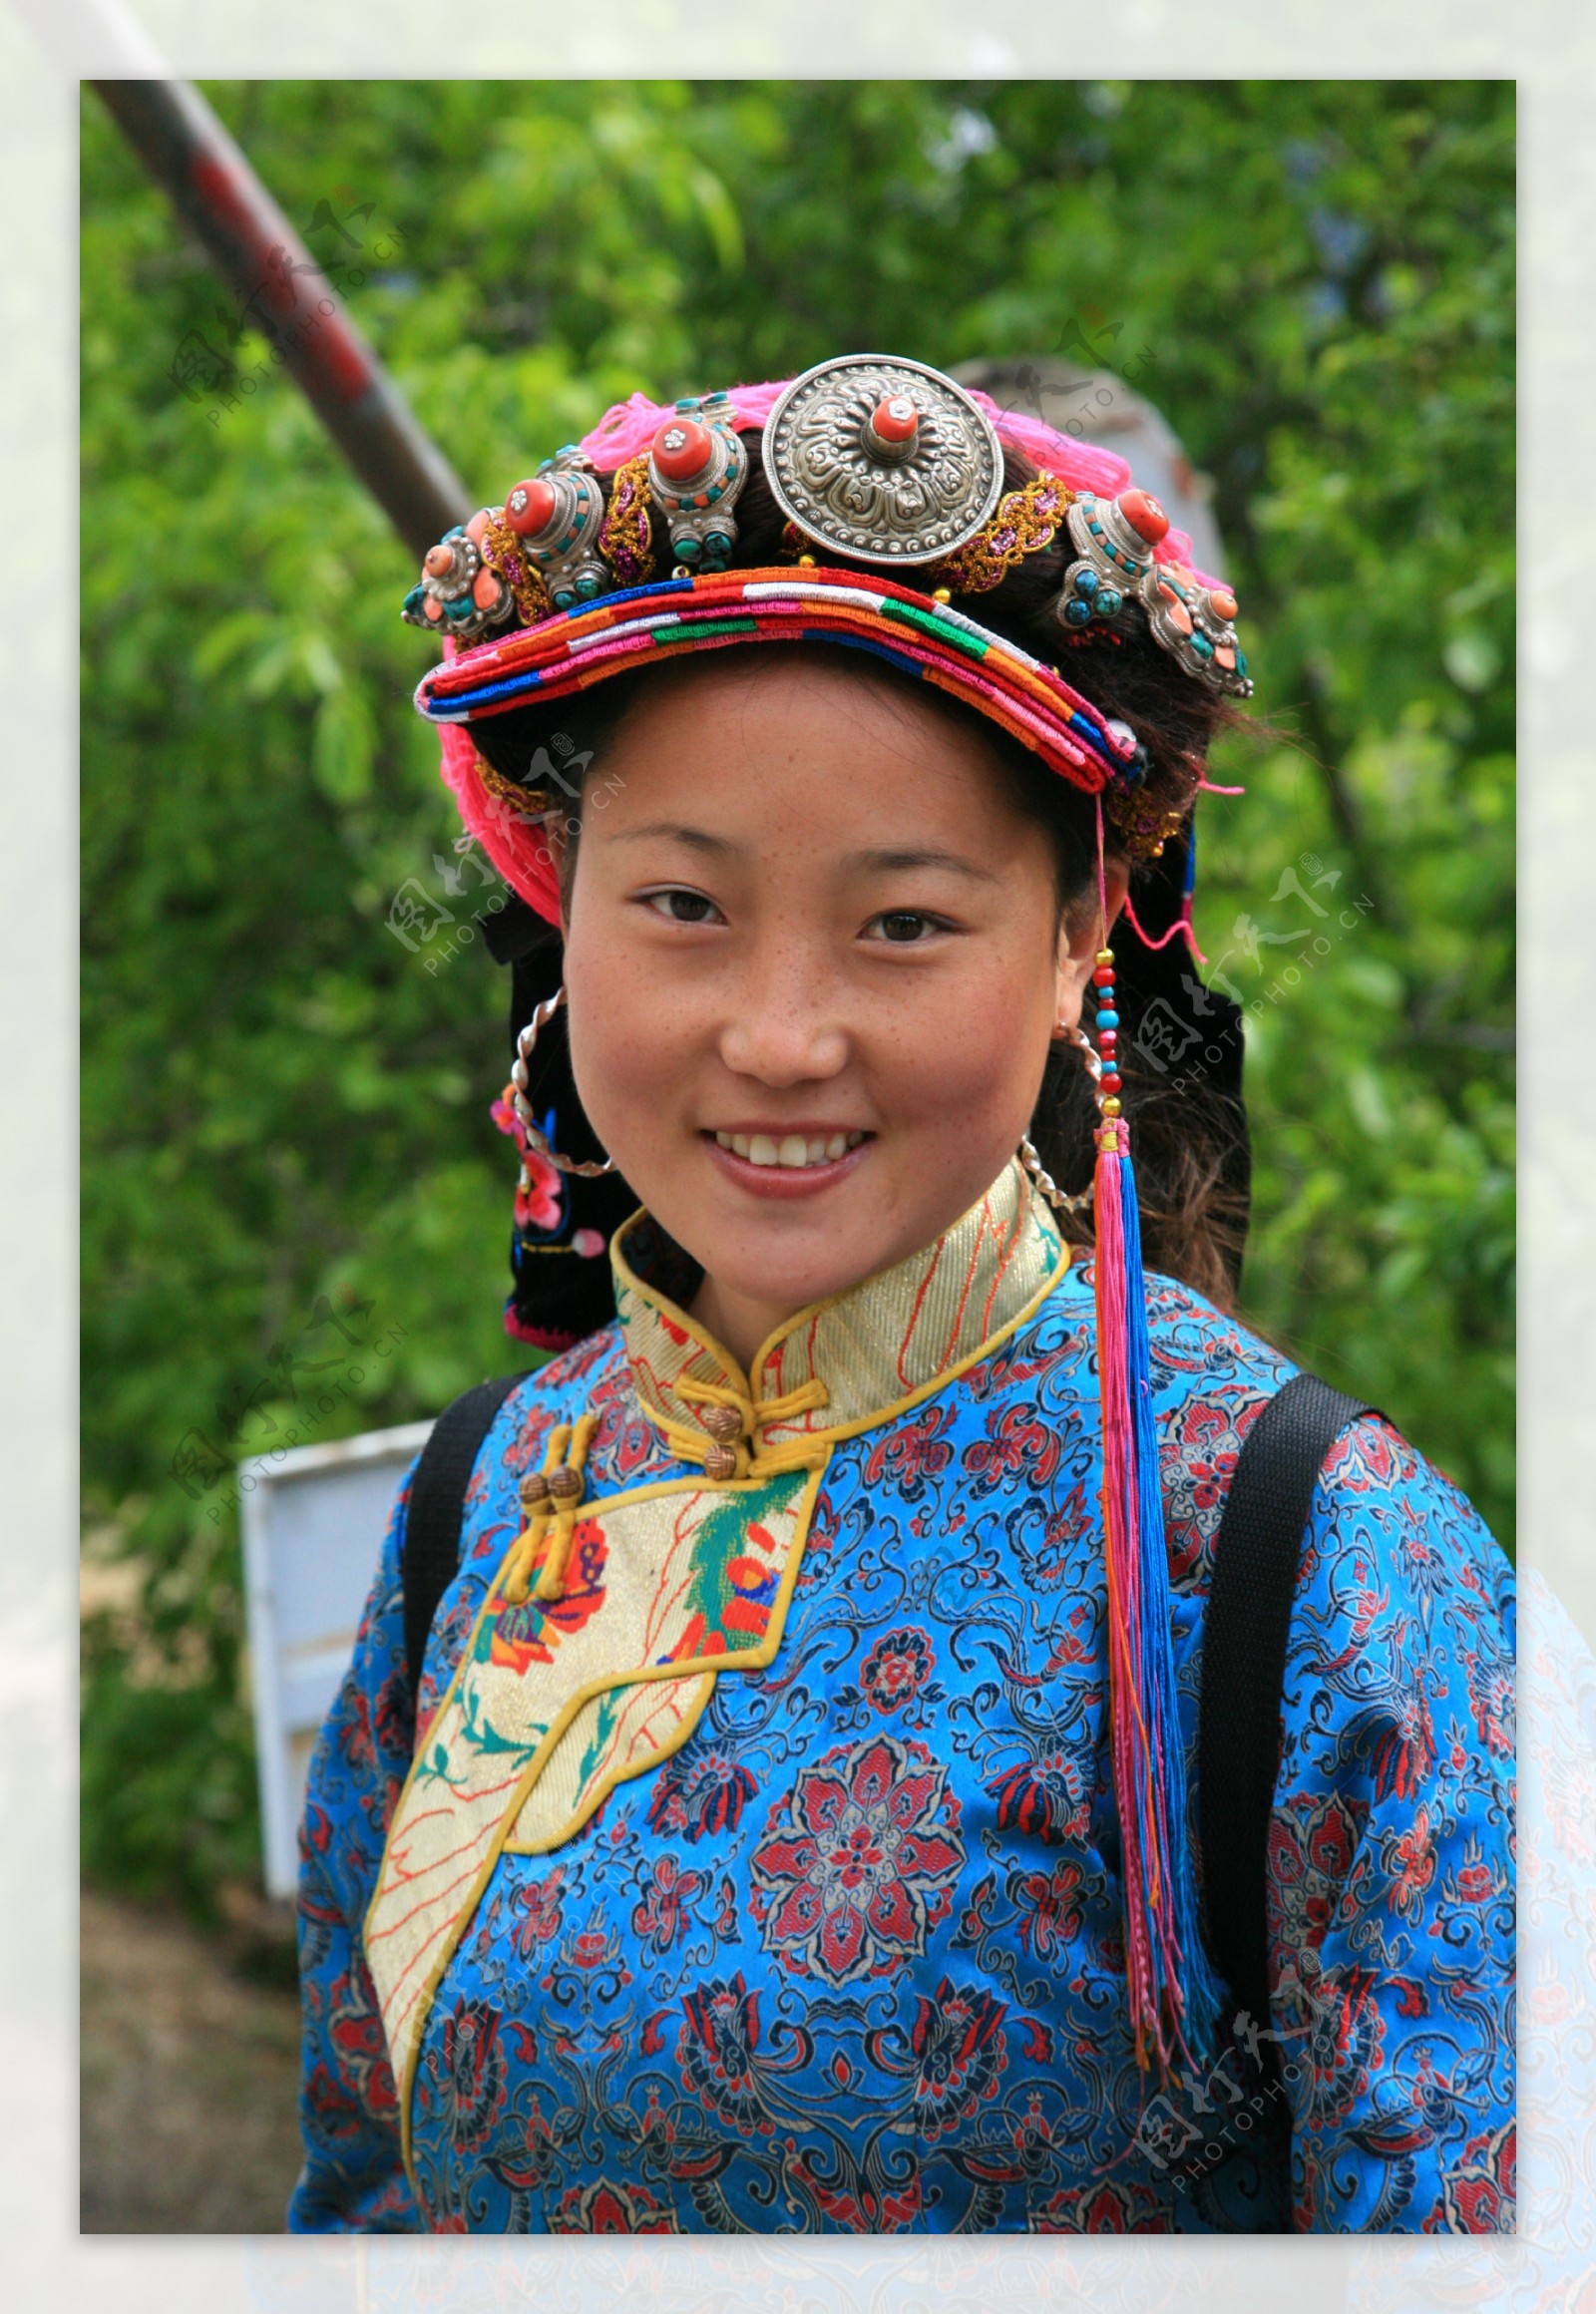 蒙古族服装图片姑娘,蒙古族服装图片 - 伤感说说吧